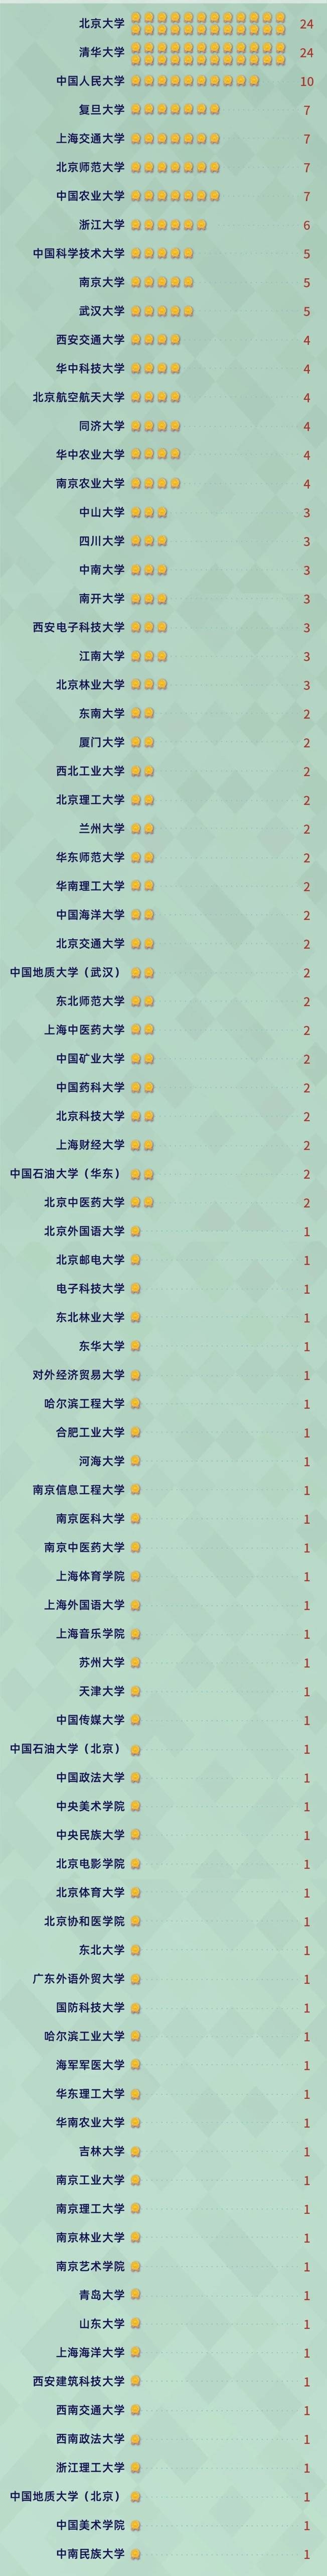 软科全国排名2020_中国软科“文科”大学排名出炉:清华大学排